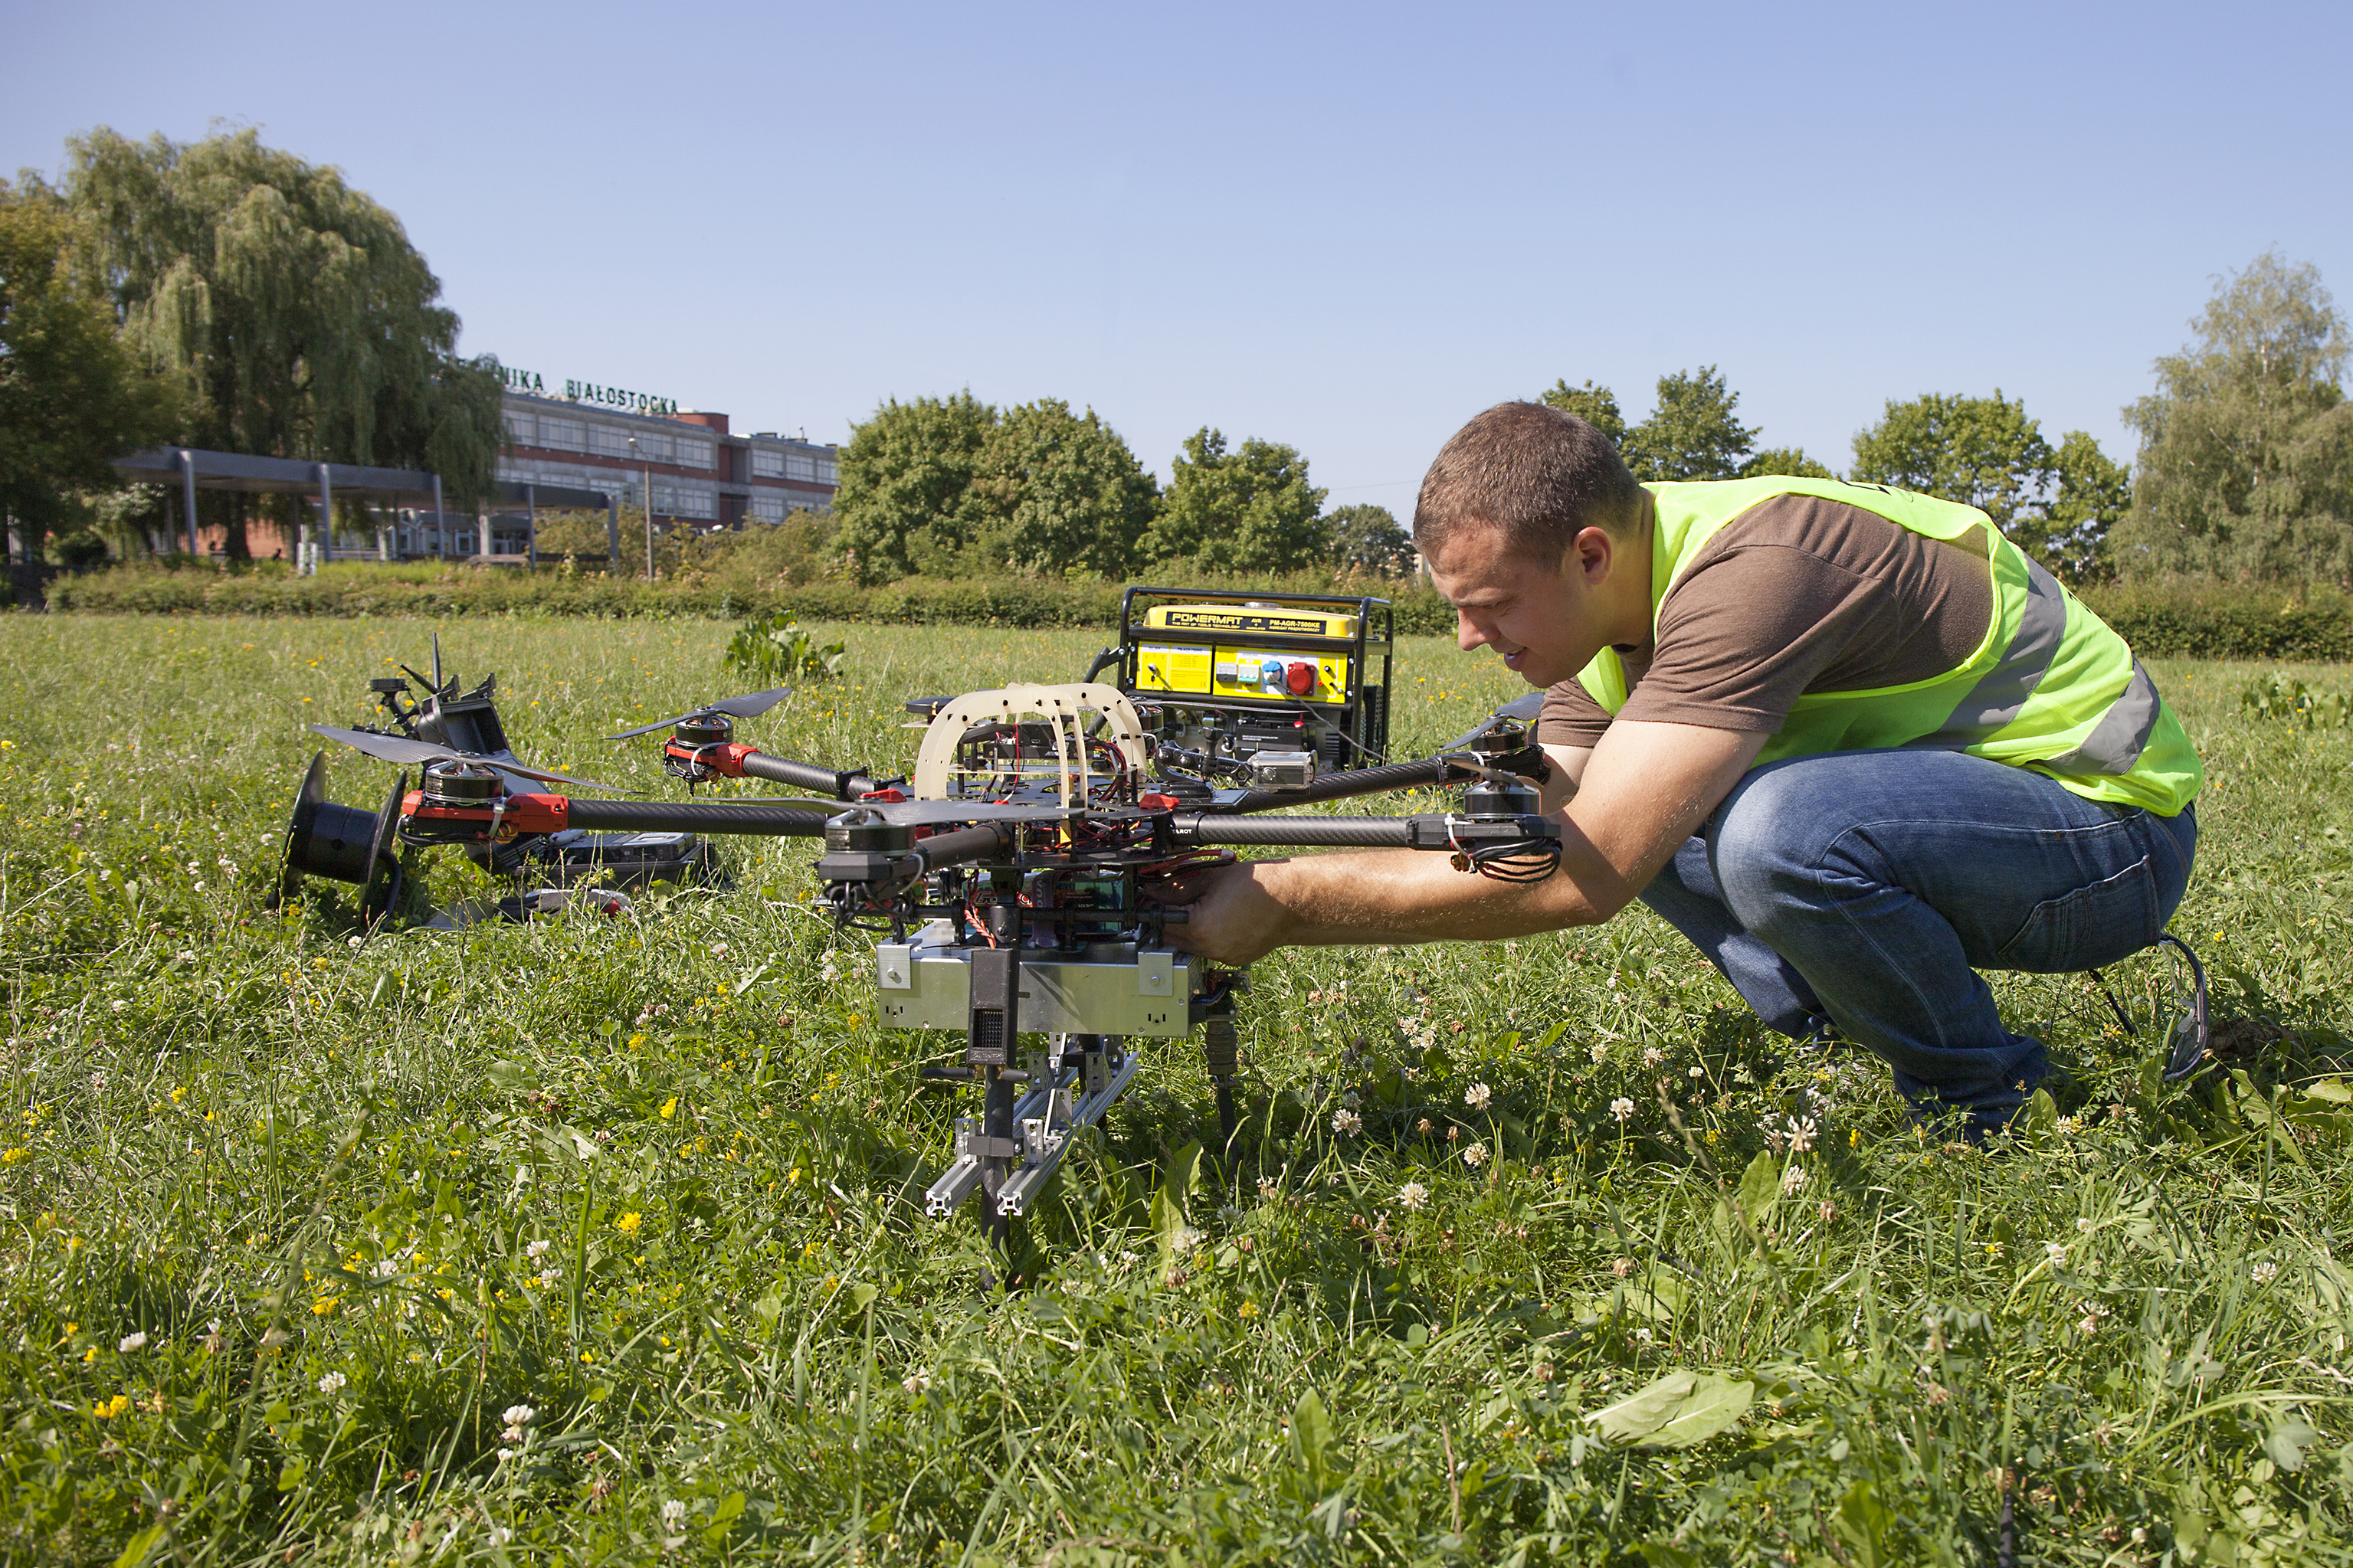 Testy elementów systemu AVAL przeprowadzone na Politechnice Białostockiej. Na zdjęciu mężczyzna w żółtej kamizelce ochronnej pracuje przy dronie na łące 